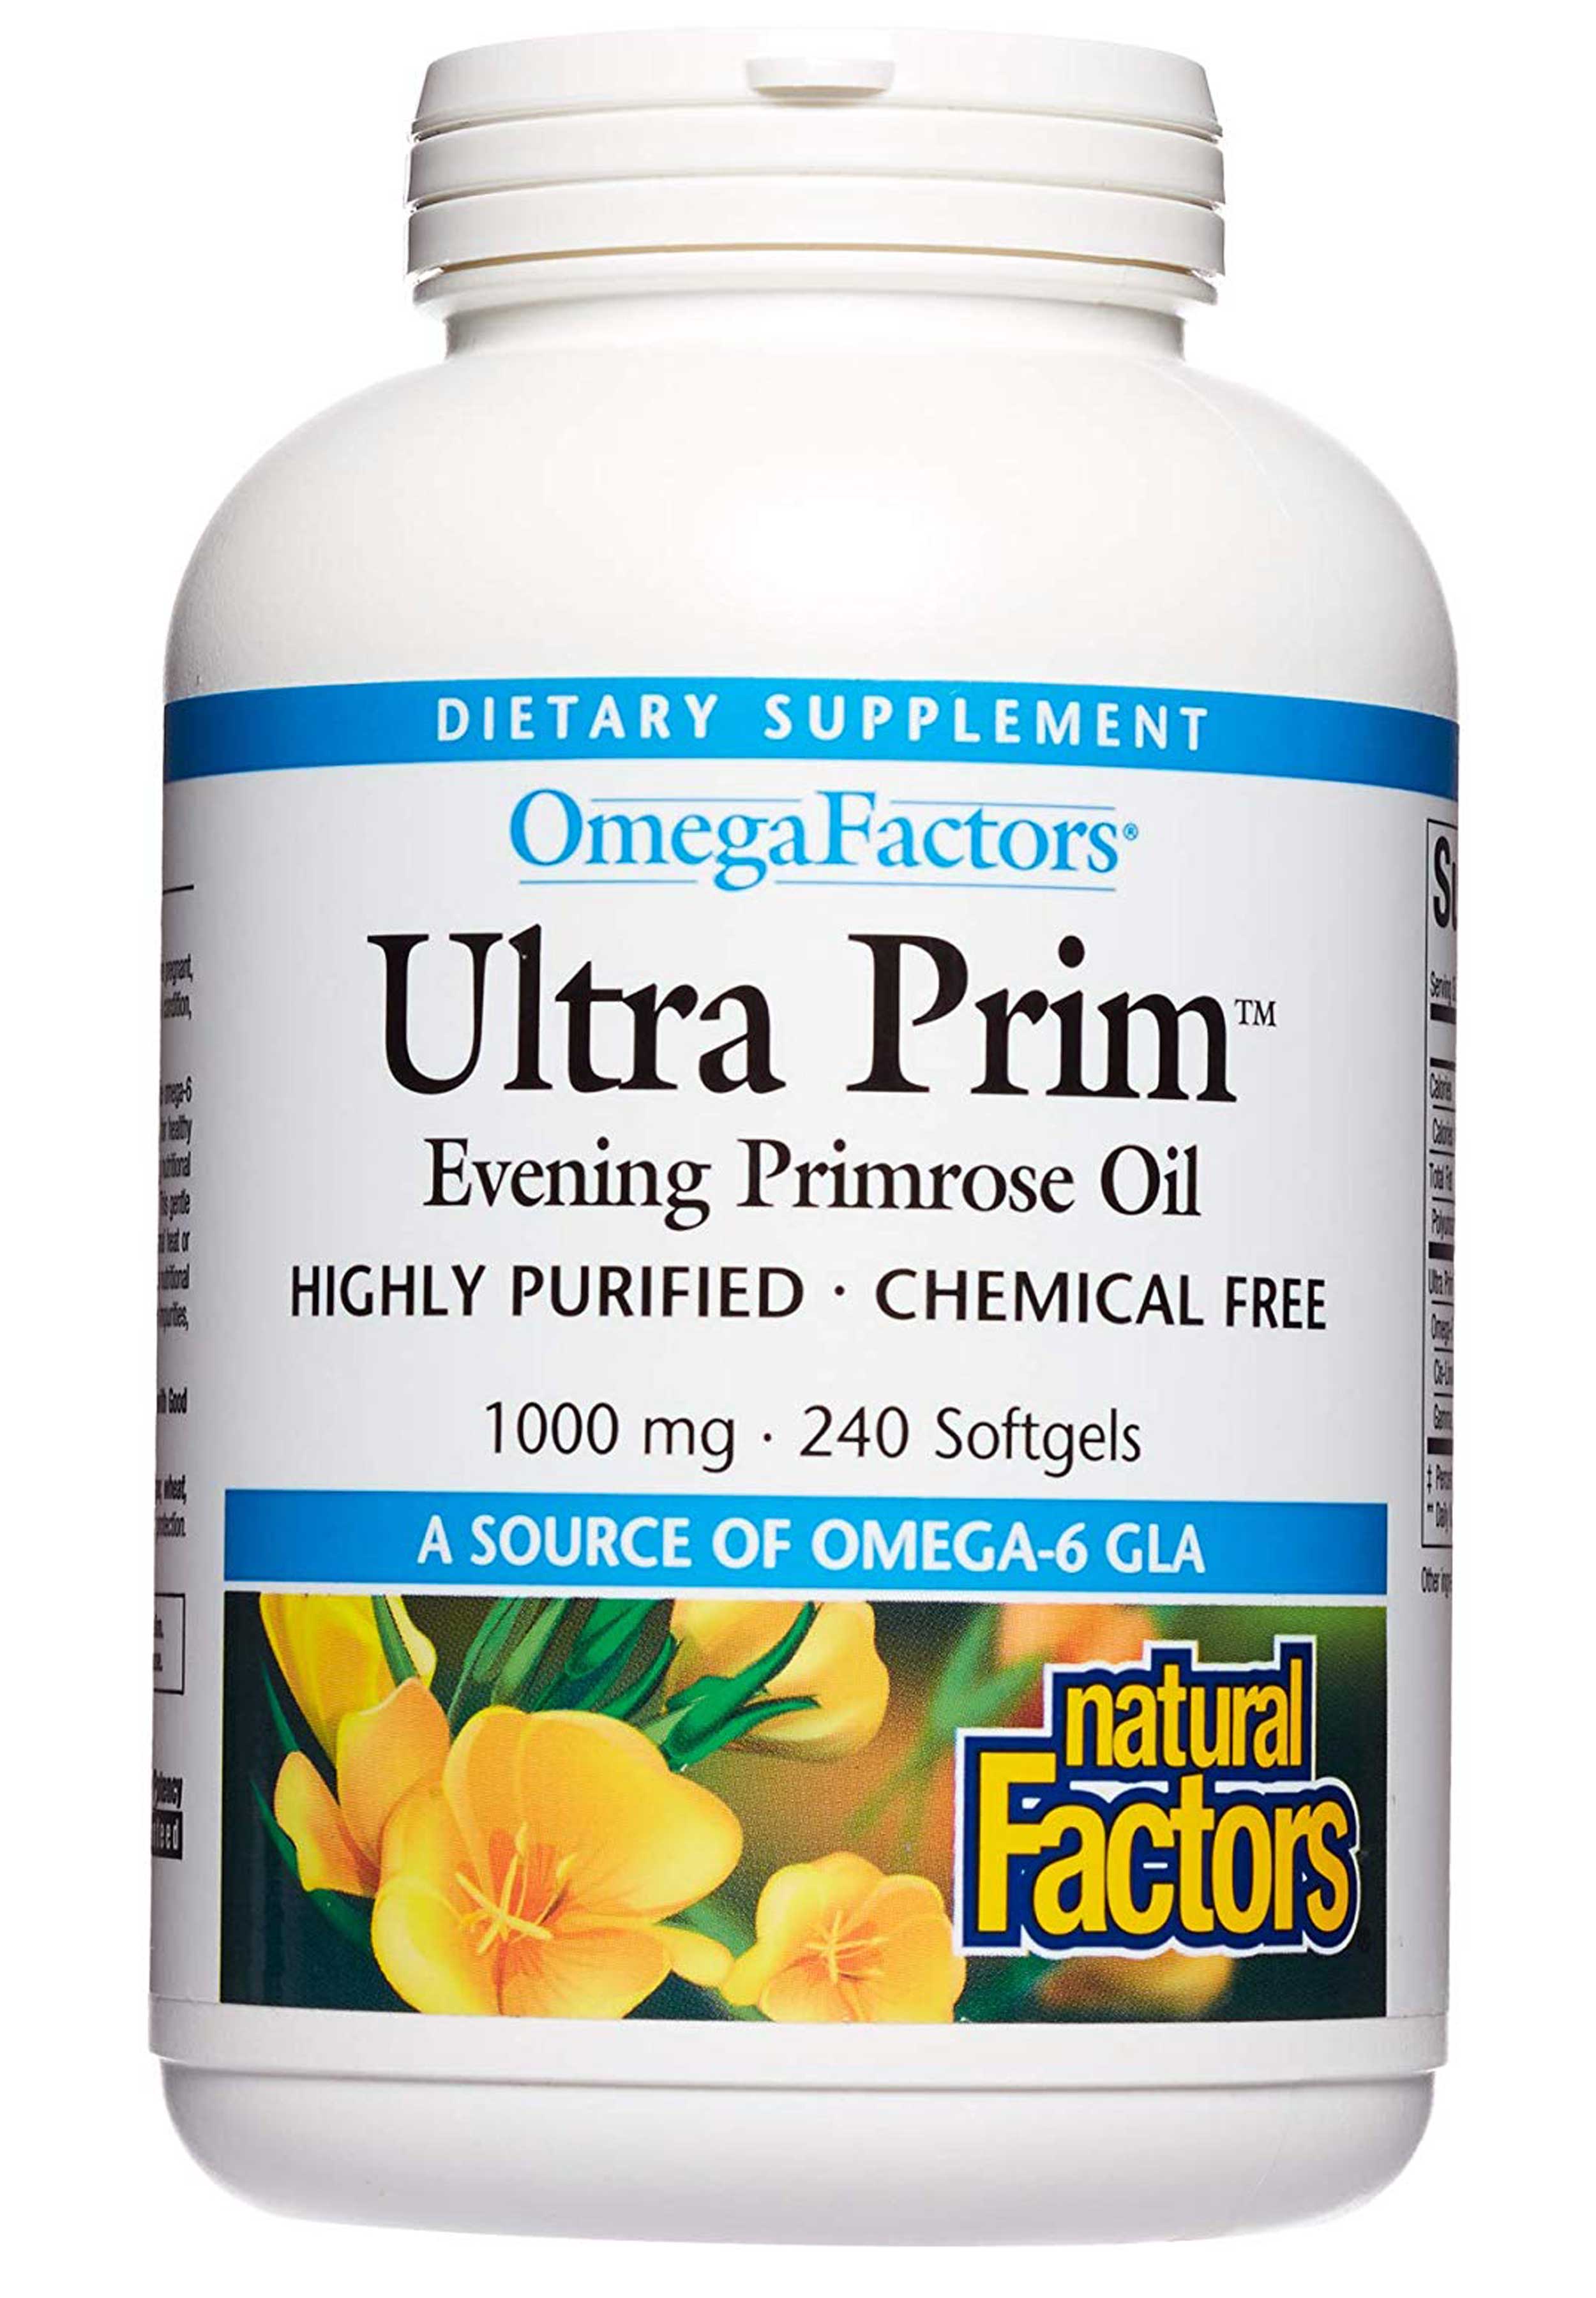 Natural Factors Ultra Prim Evening Primrose Oil 240 softgels